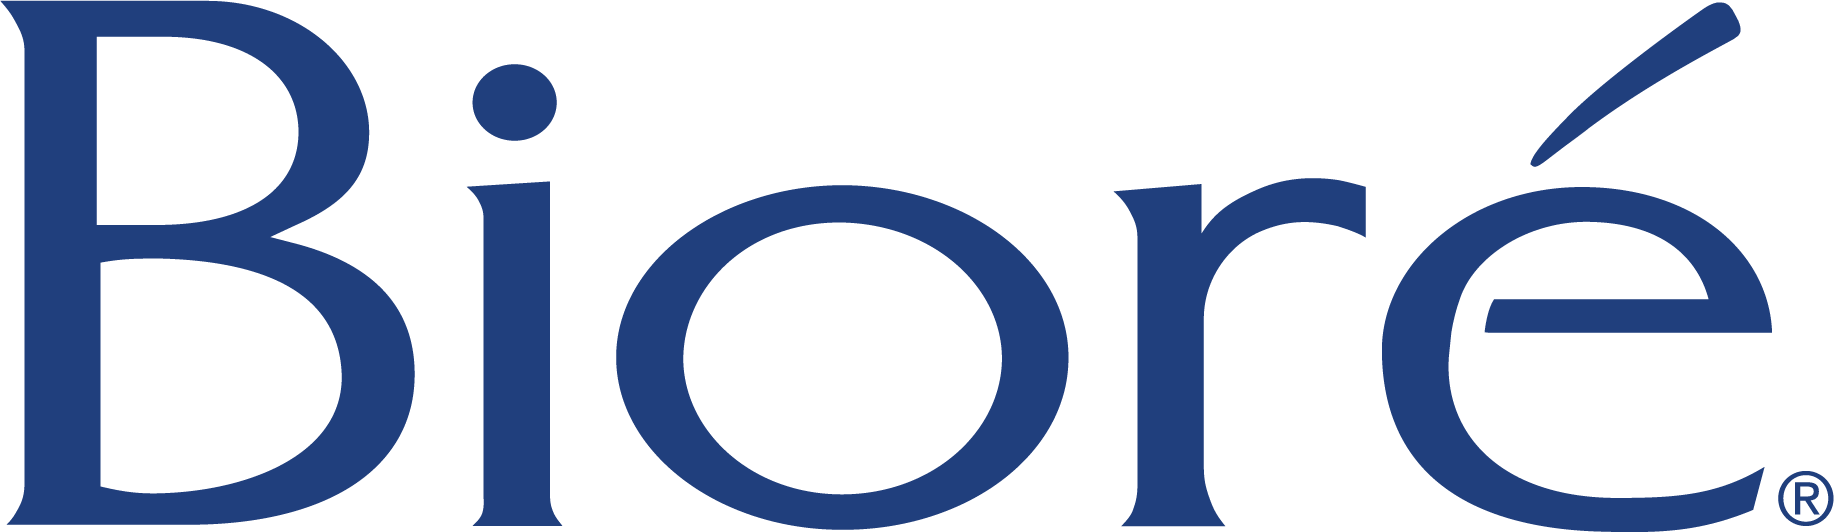 Biore Logo